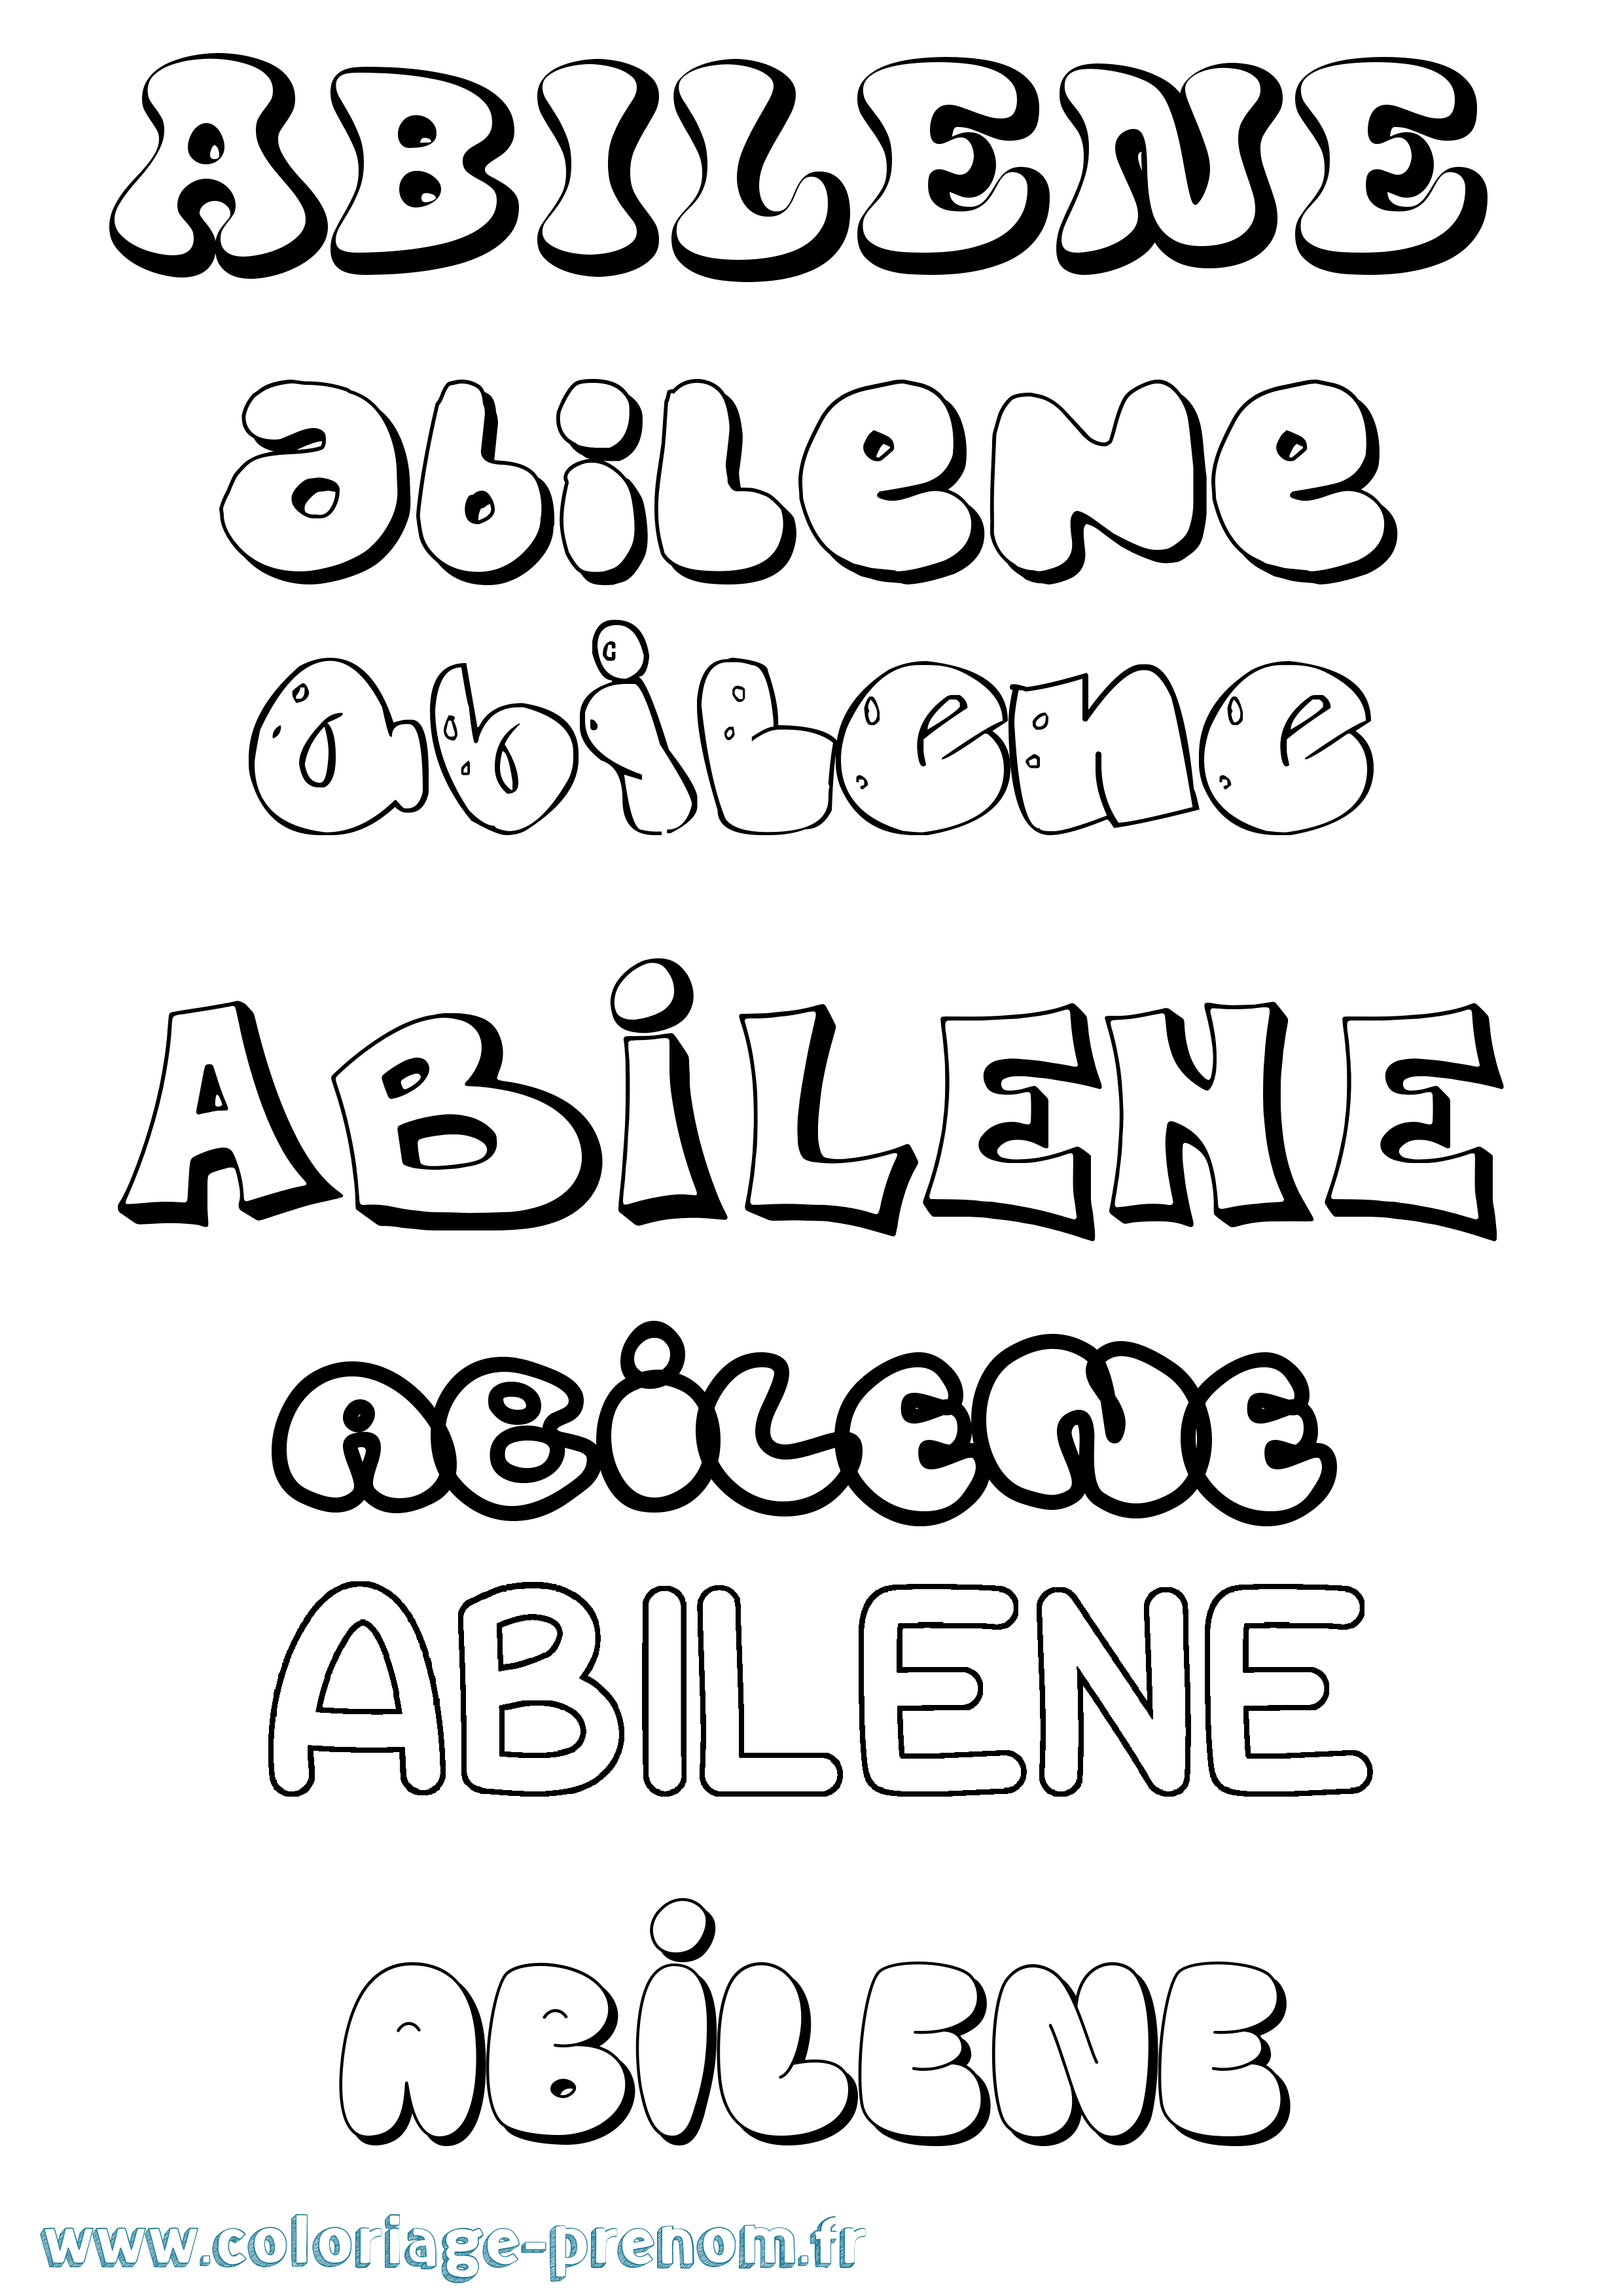 Coloriage prénom Abilene Bubble